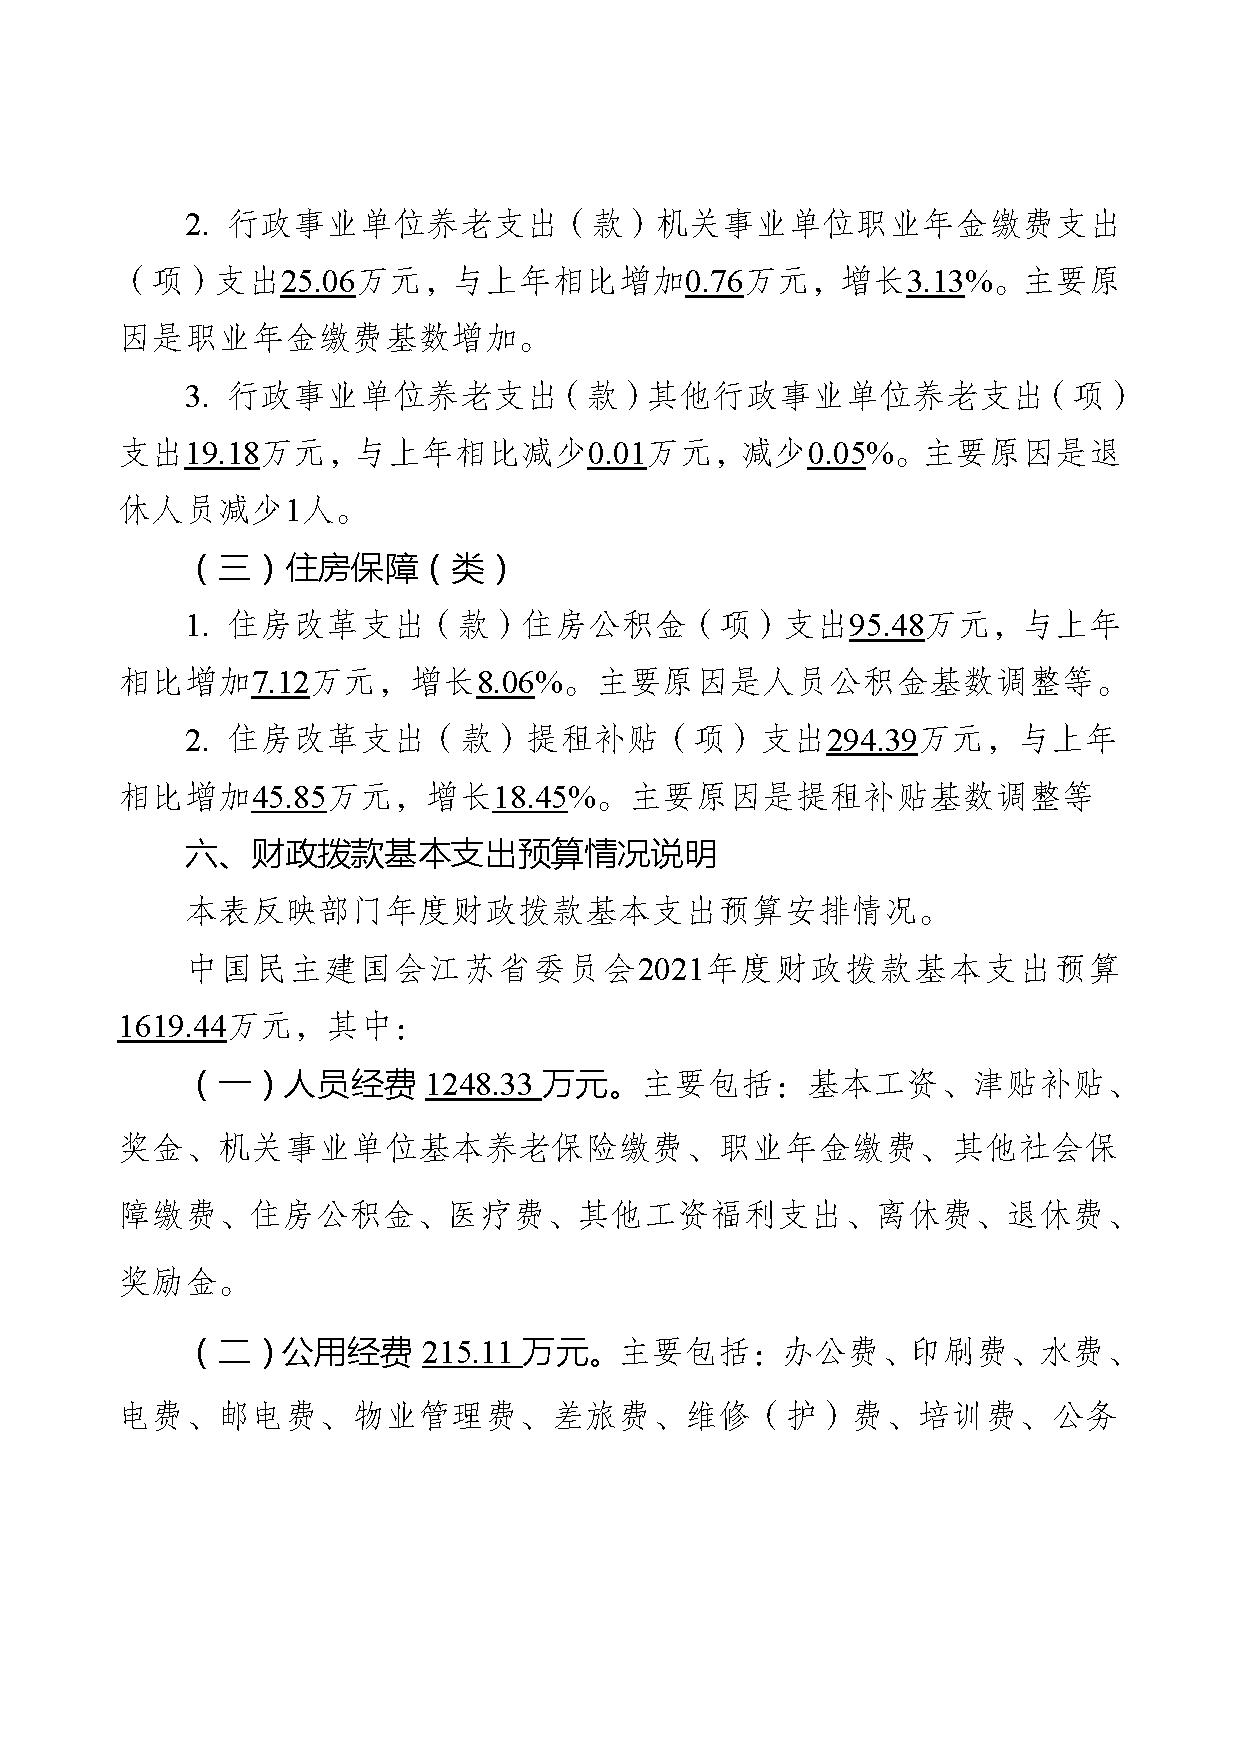 2021年度中国民主建国会江苏省委员会部门预算公开-27.jpg